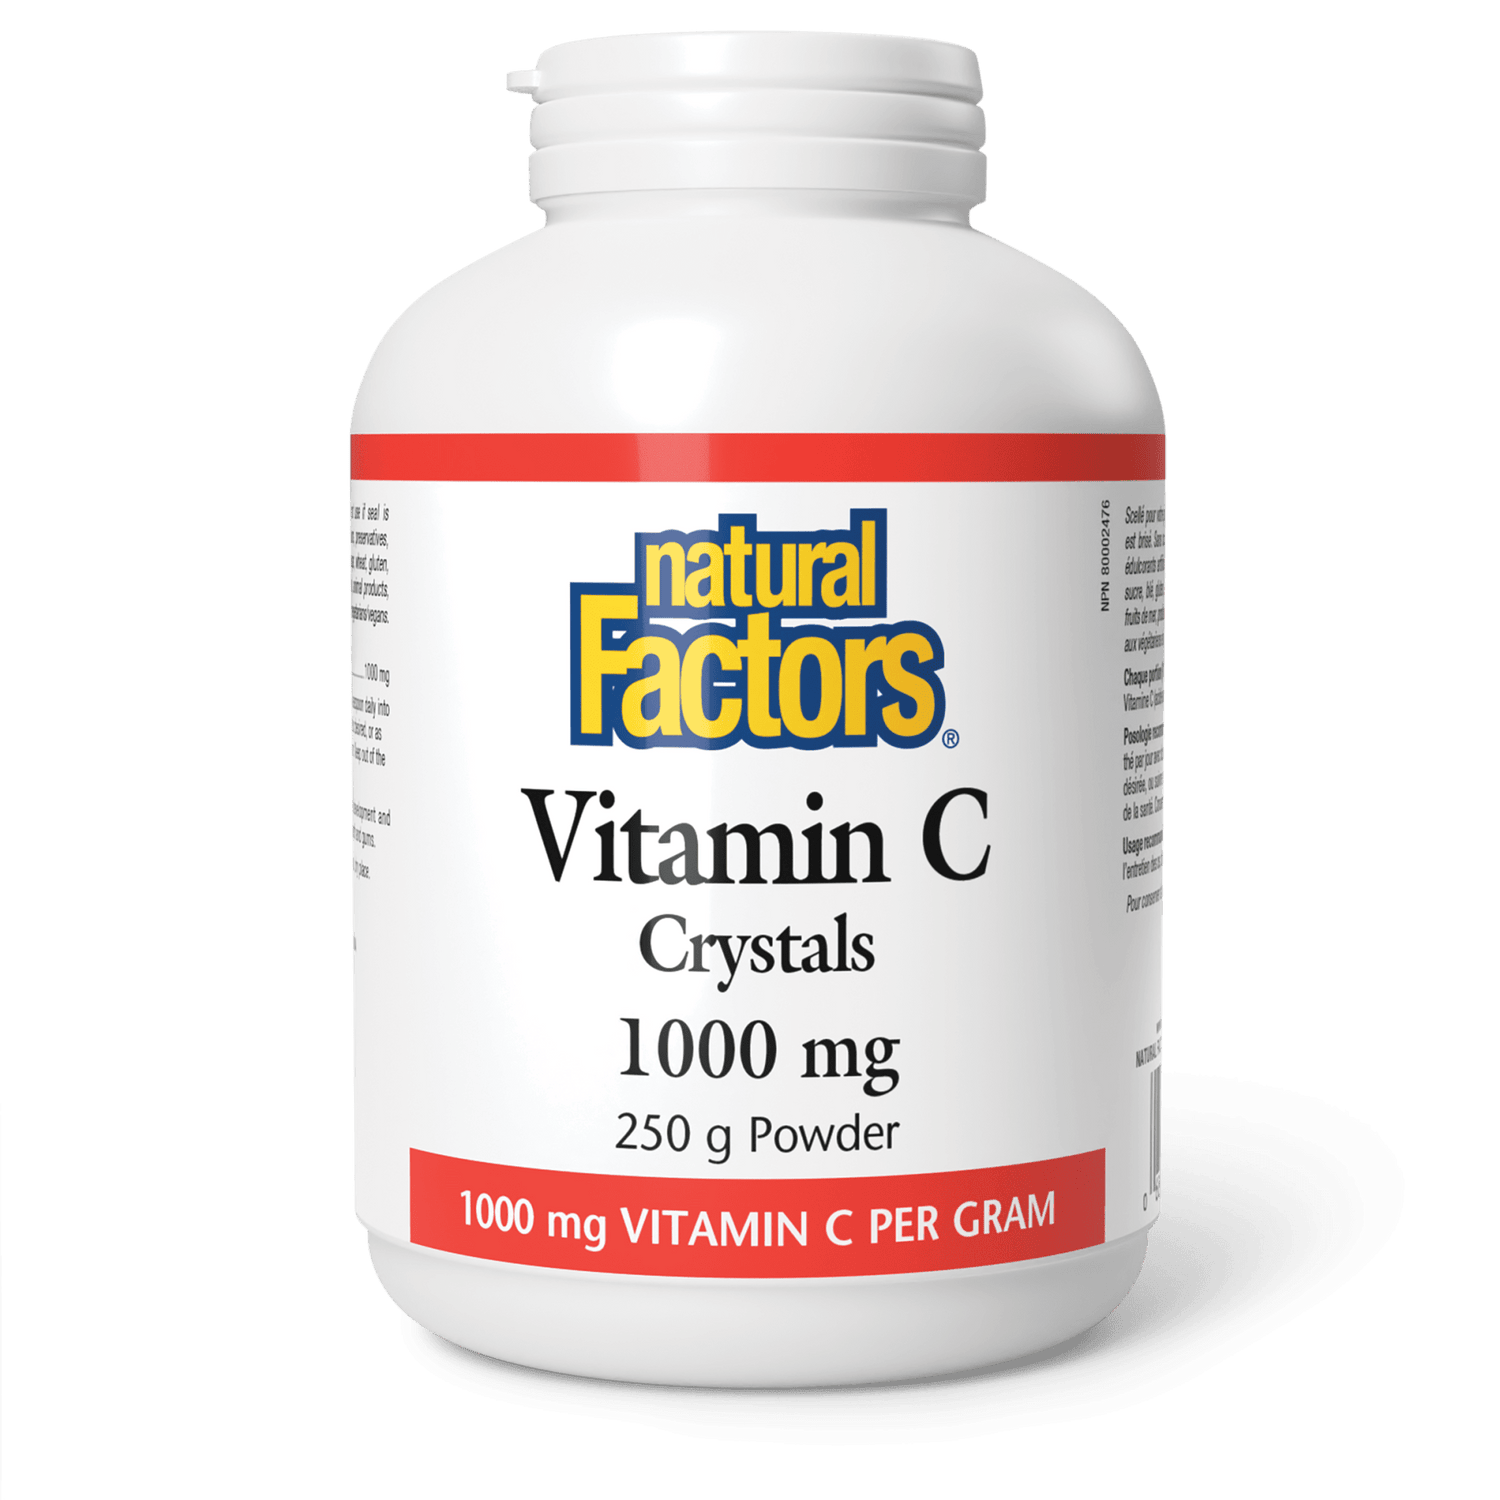 Vitamin C Crystals 1000 mg, Natural Factors|v|image|1361